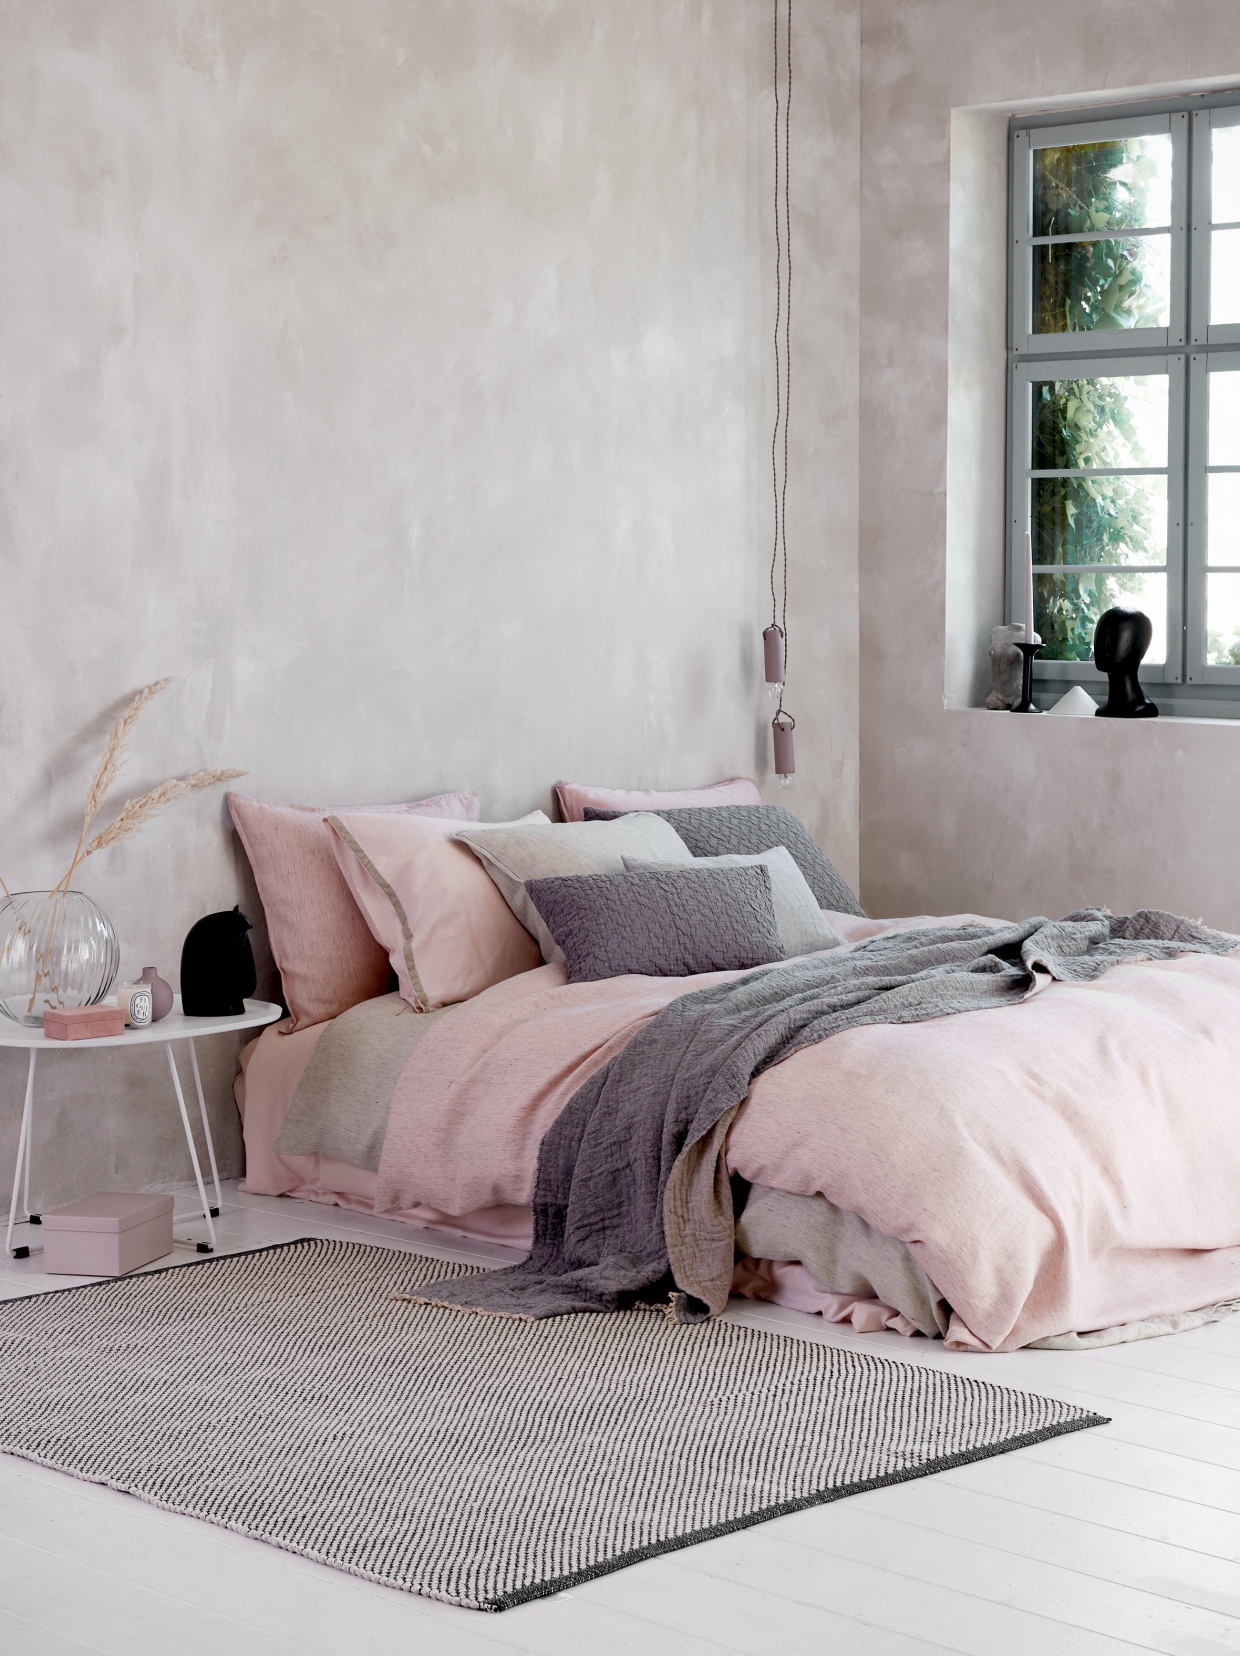 gas Raffinaderij Geschatte Ideeën voor een slaapkamer met wit, roze en grijs • ARCHANA.NL